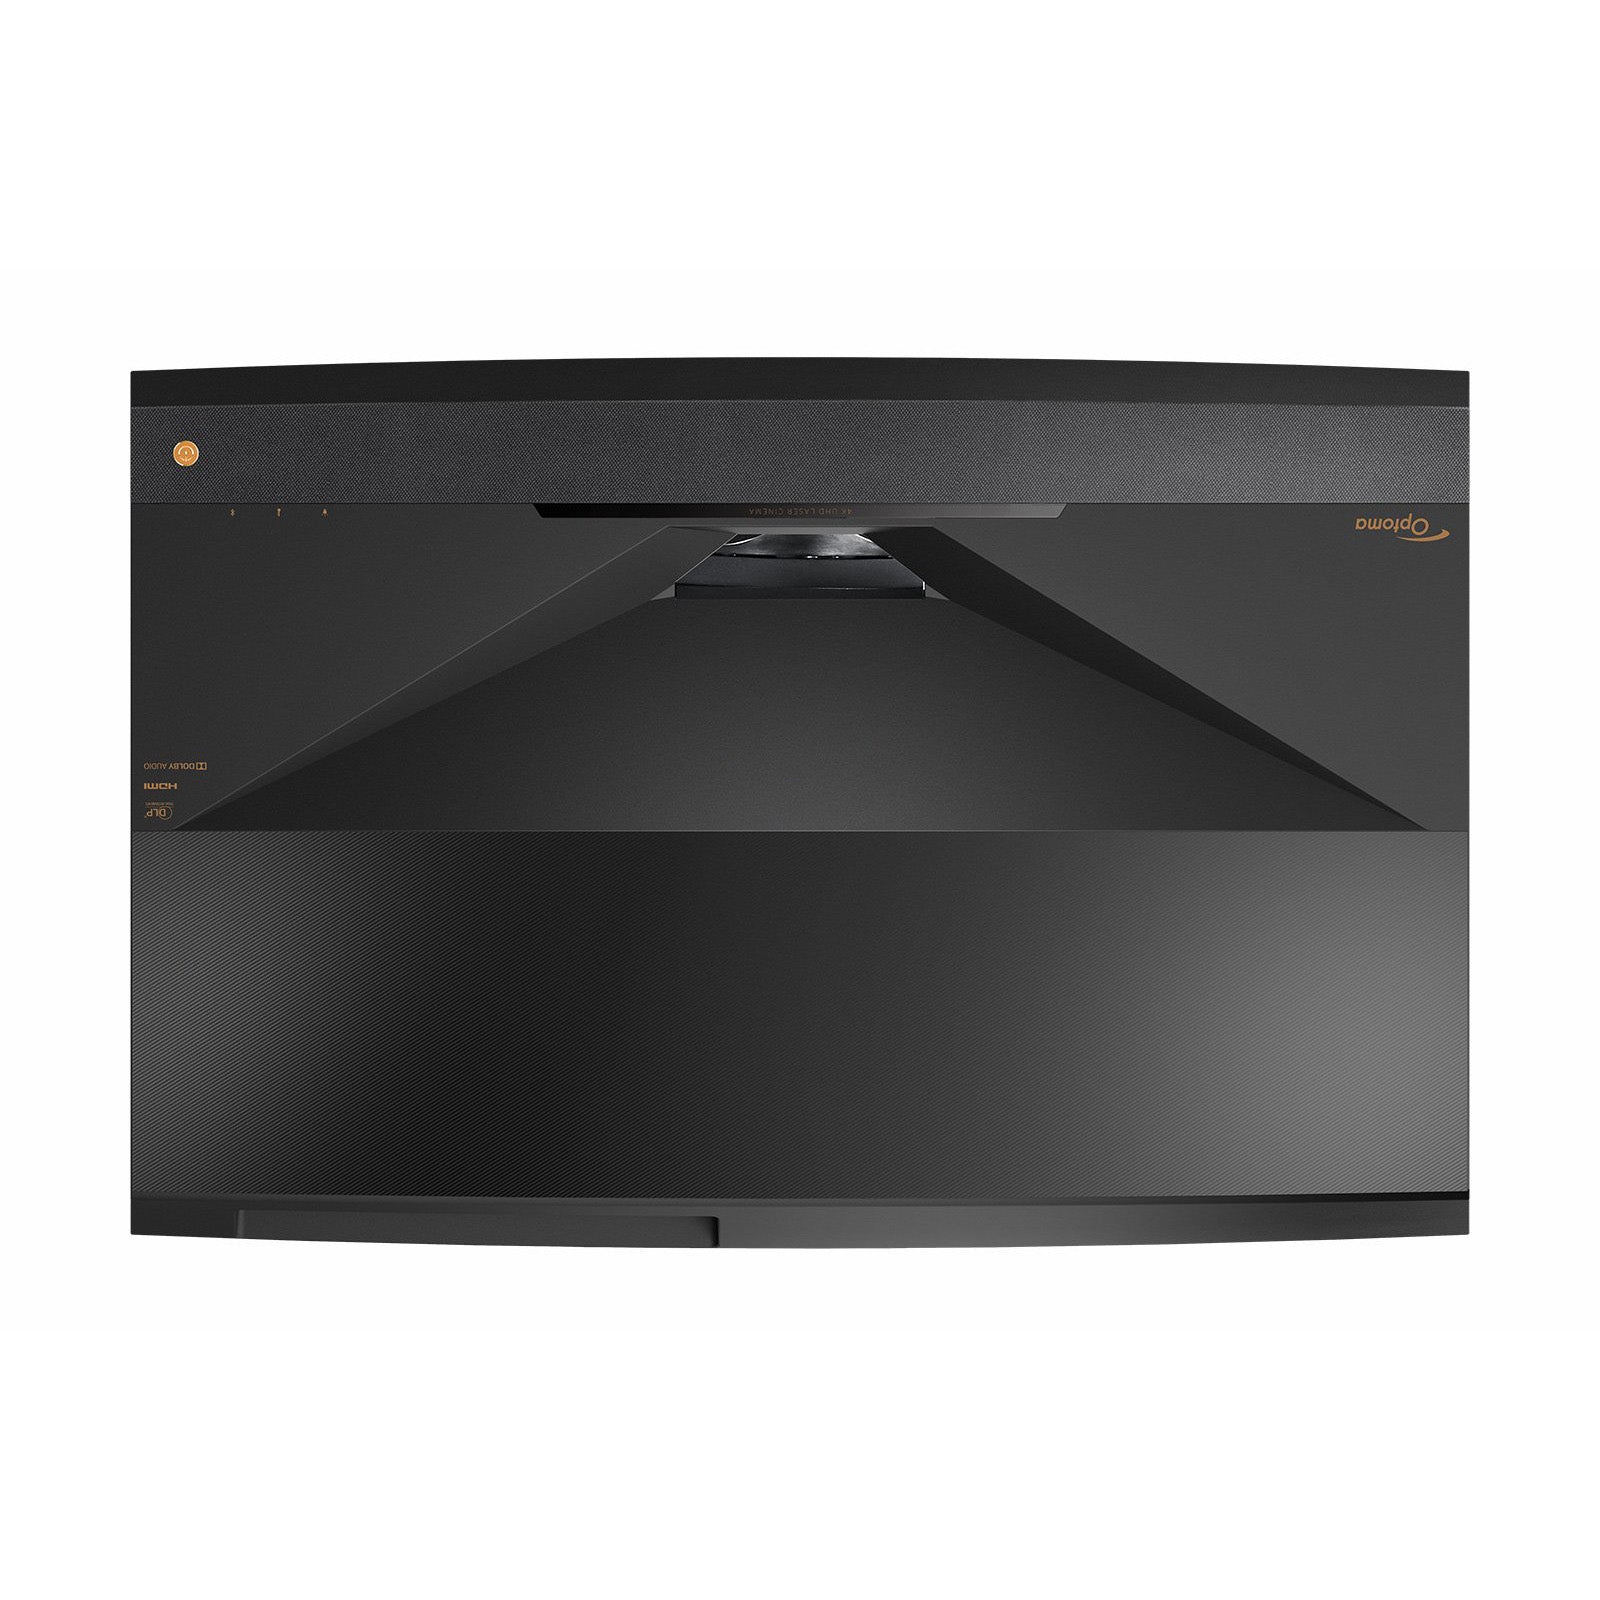 Optoma Cinema X Pro V2 4K LaserTV Projection TV 